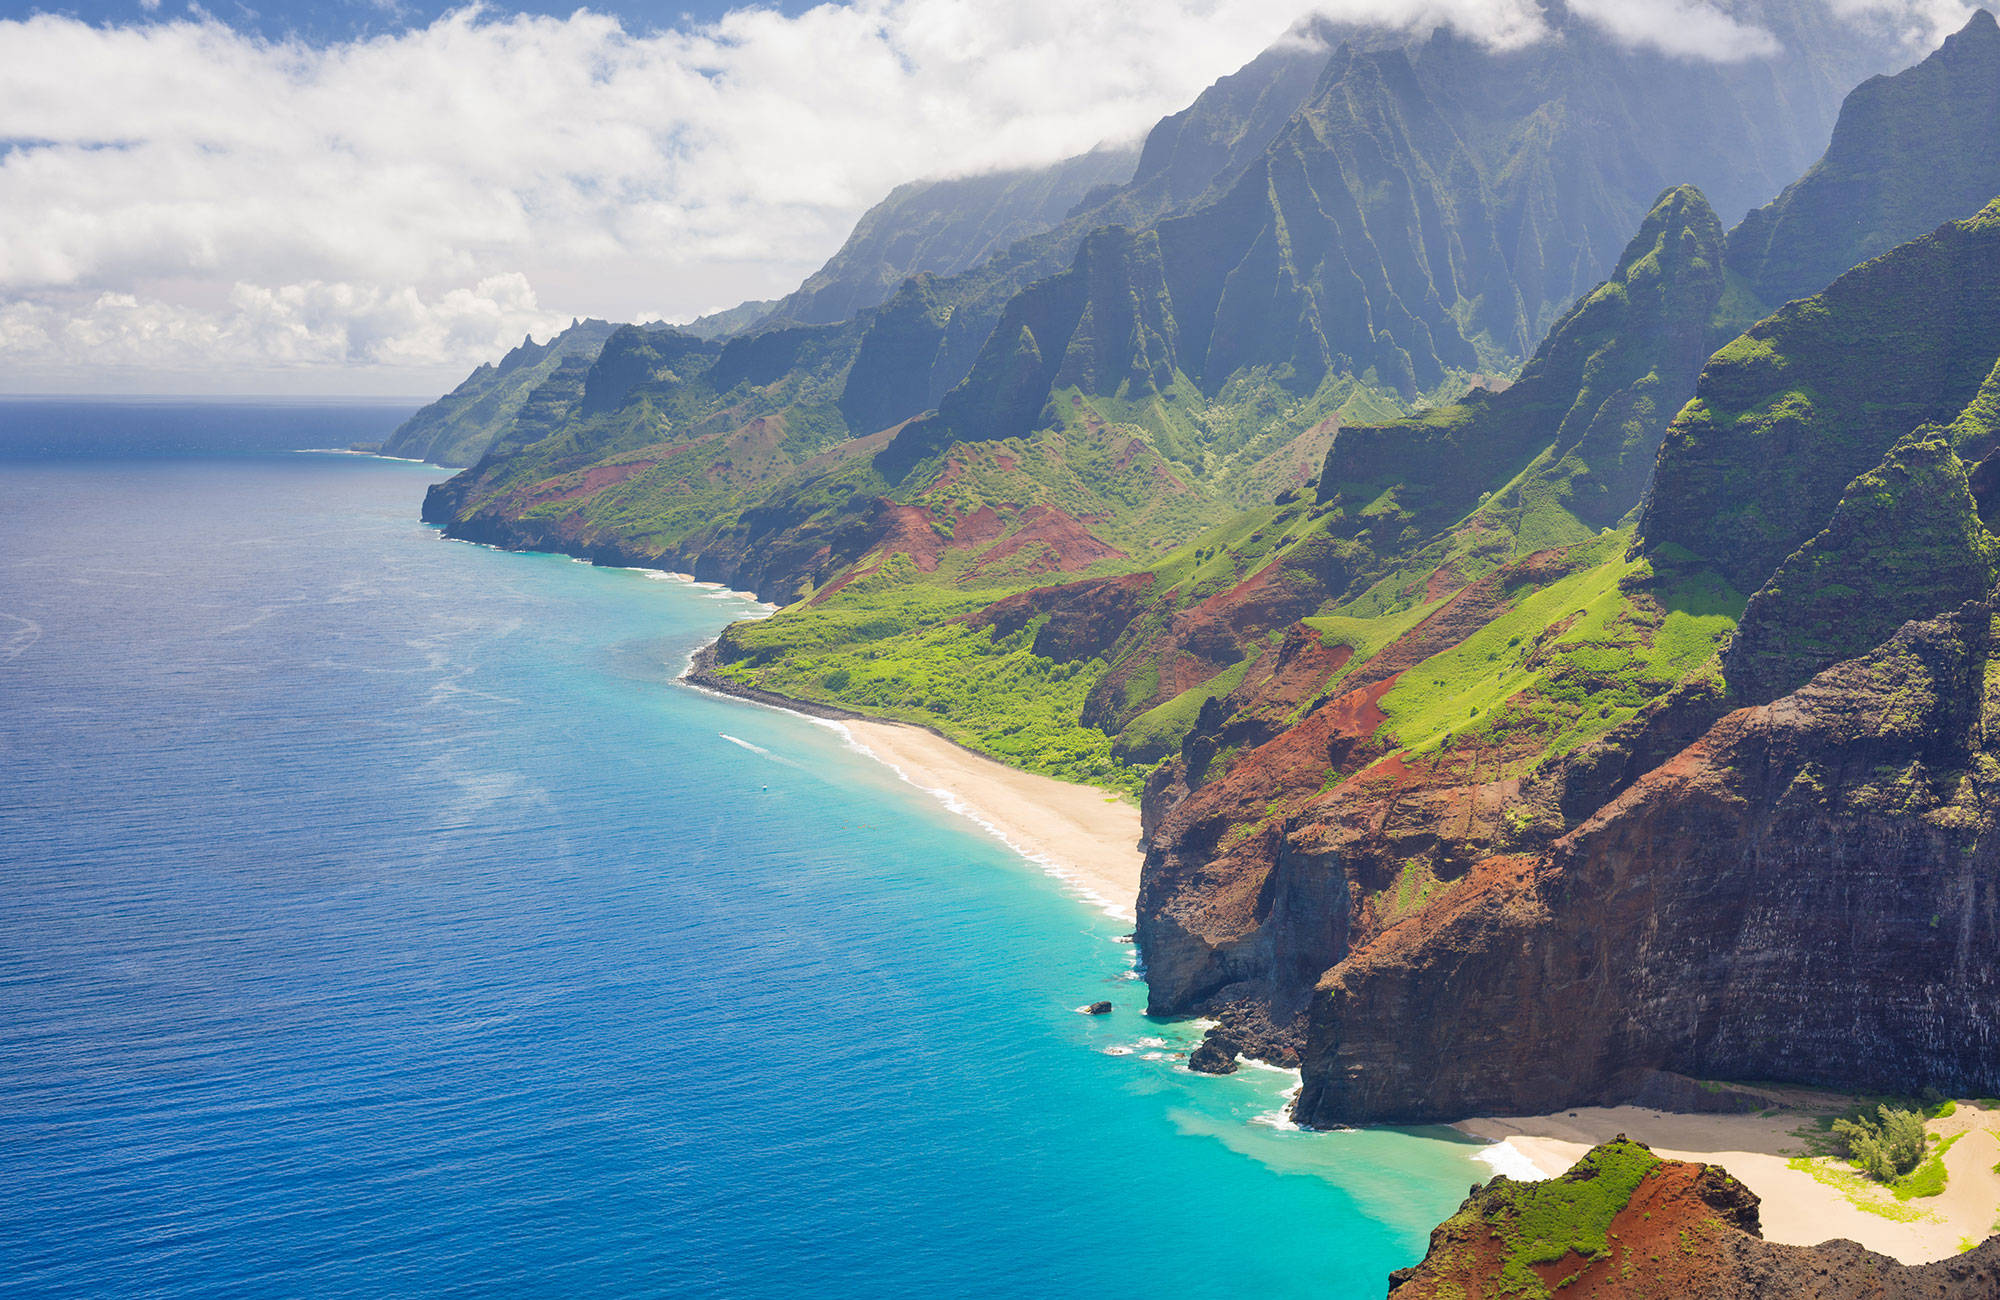 The coastline in Hawaii